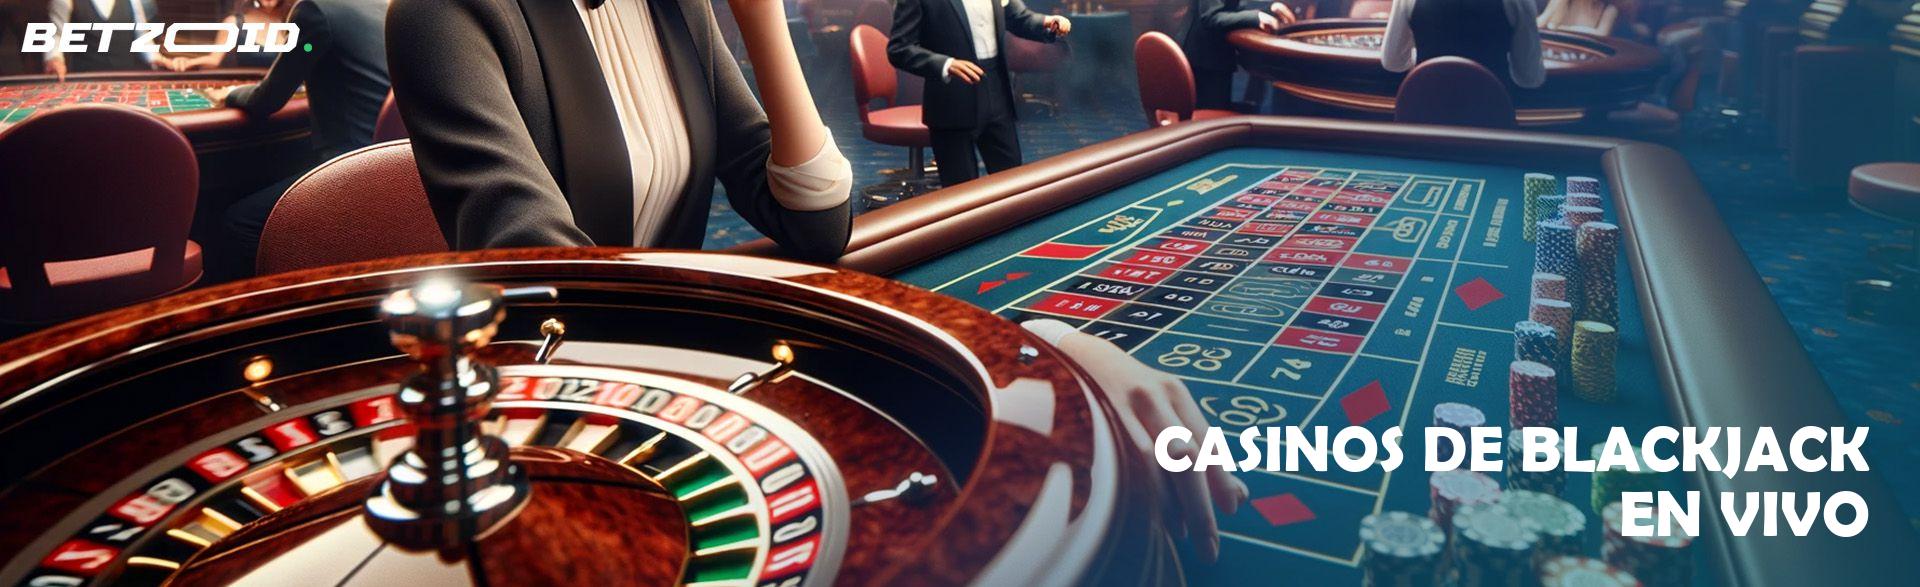 Casinos de Blackjack En Vivo.